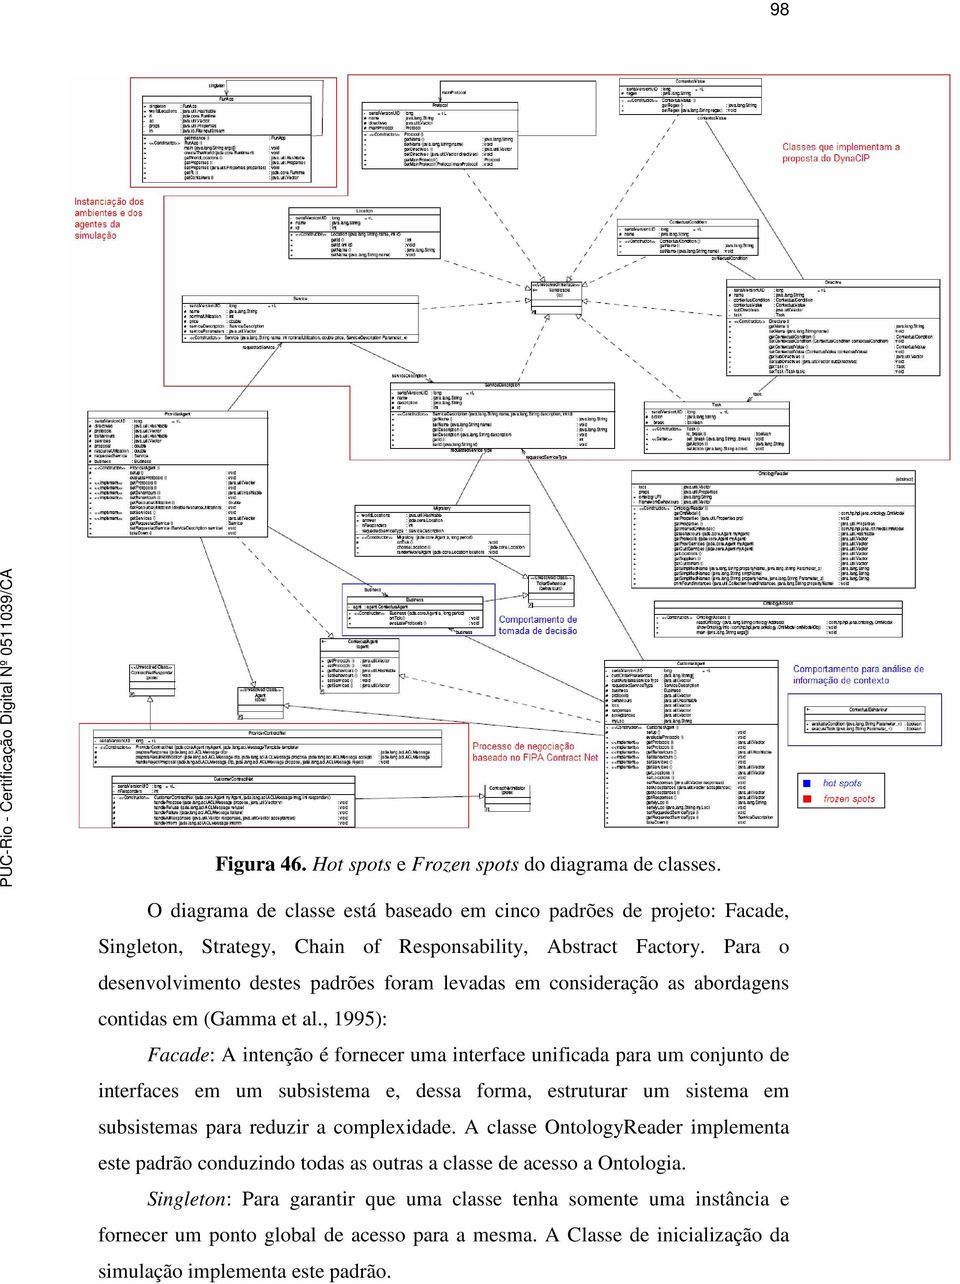 , 1995): Facade: A intenção é fornecer uma interface unificada para um conjunto de interfaces em um subsistema e, dessa forma, estruturar um sistema em subsistemas para reduzir a complexidade.